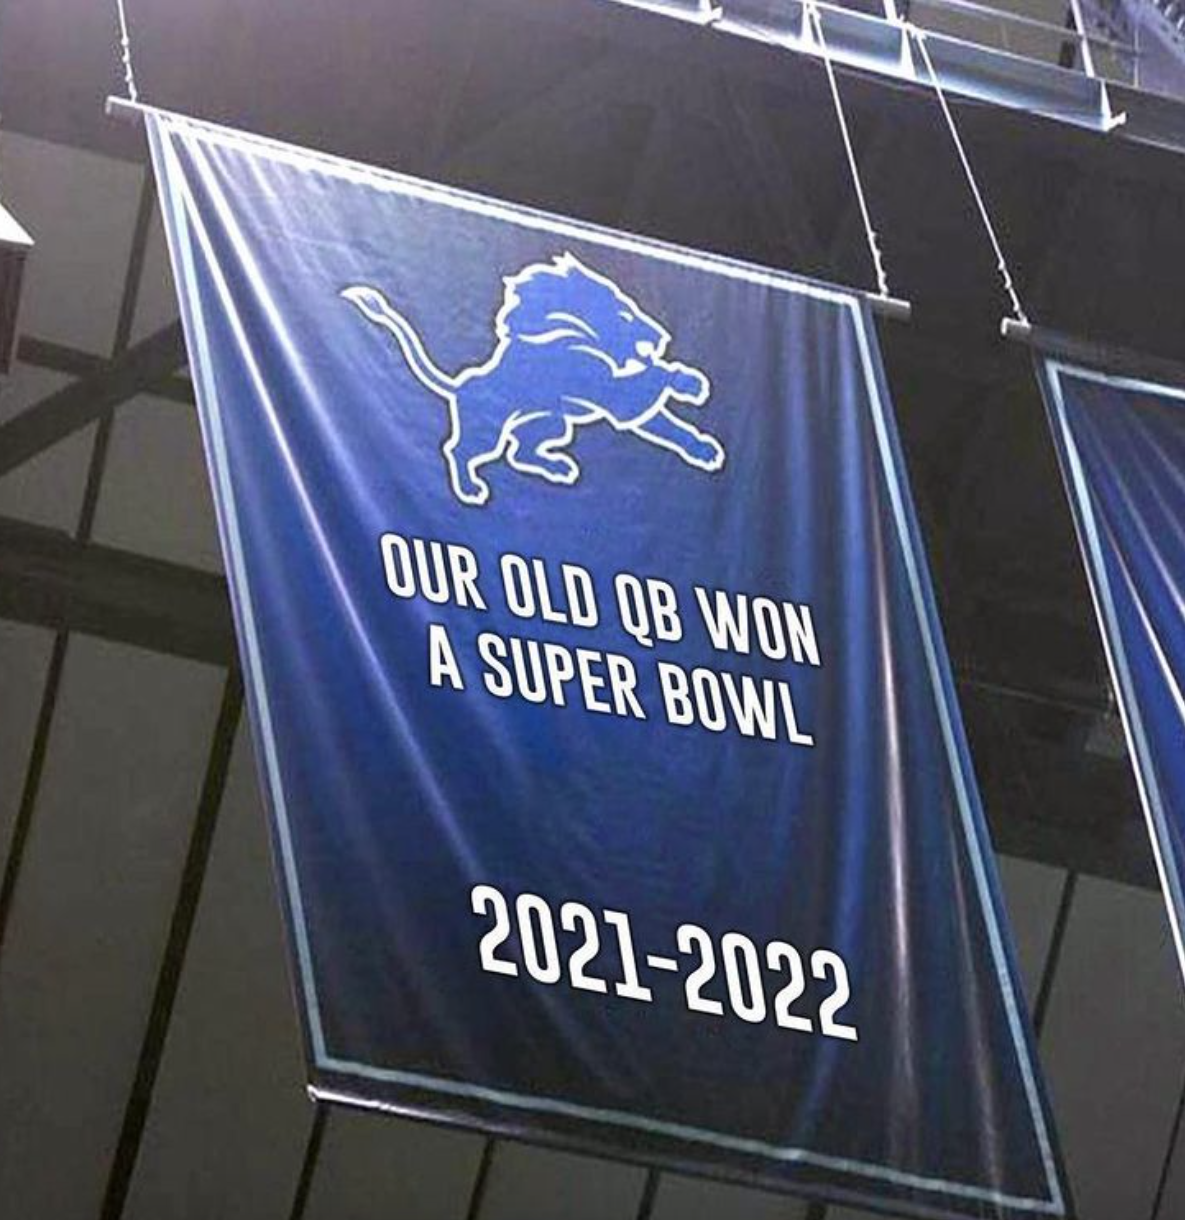 super bowl memes 2022 - lions 1 win banner - Our Old Qb Won A Super Bowl 20212022